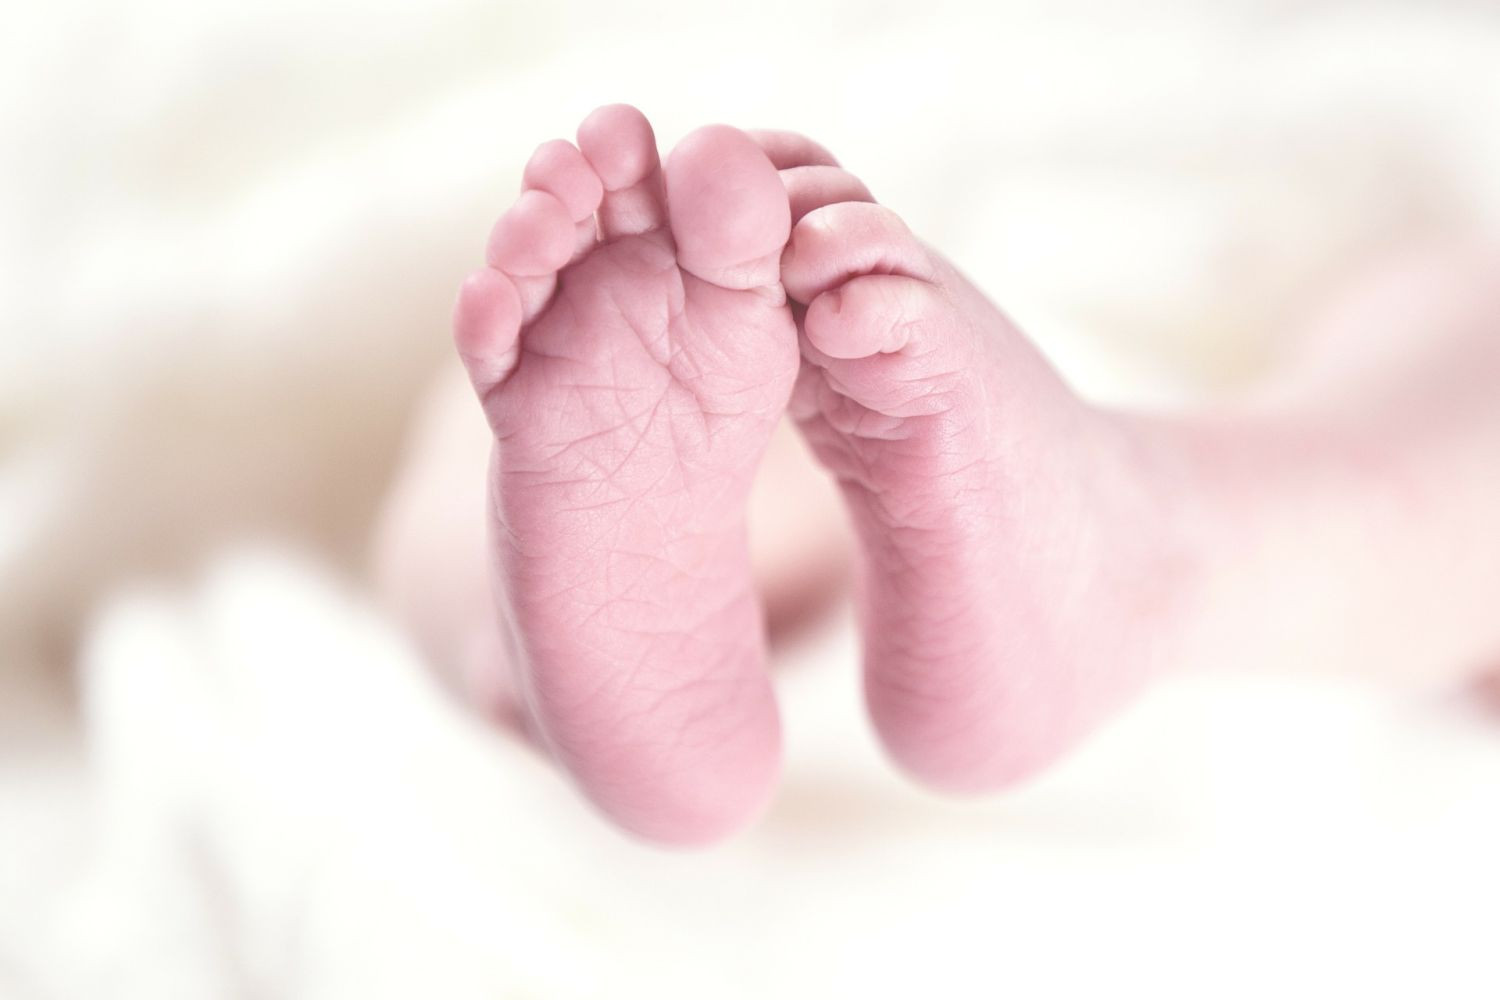 Ομογενείς δίνουν 1.000 ευρώ επίδομα γέννας για κάθε παιδί υπό έναν όρο - Φωτογραφία 1